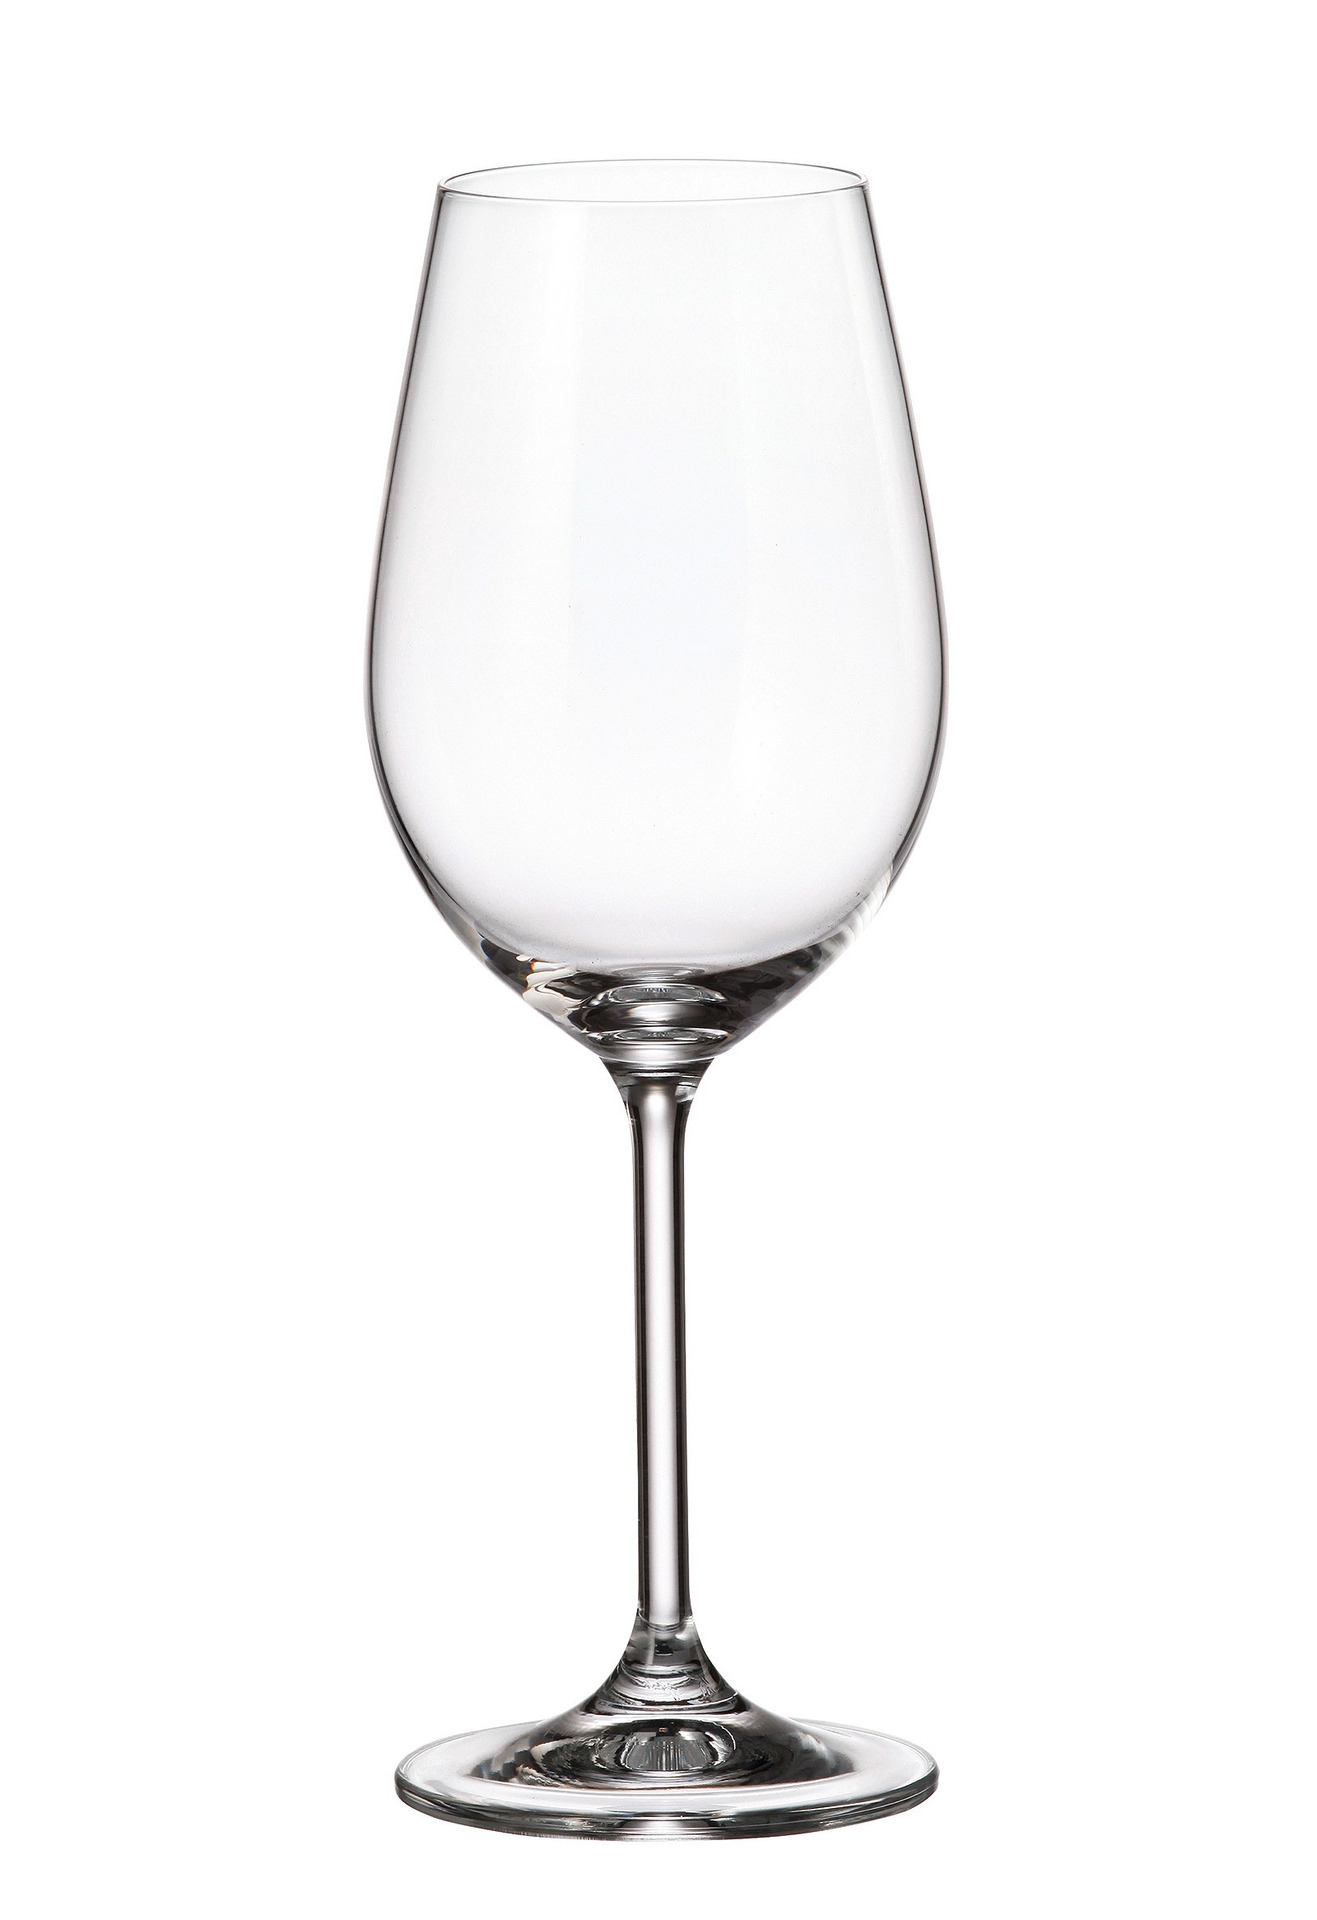 Ποτήρι Κρασιού Κρυστάλλινο Bohemia Colibri 350ml CTB03202035 (Σετ 6 Τεμάχια) (Υλικό: Κρύσταλλο, Χρώμα: Διάφανο , Μέγεθος: Κολωνάτο) – Κρύσταλλα Βοημίας – CTB03202035